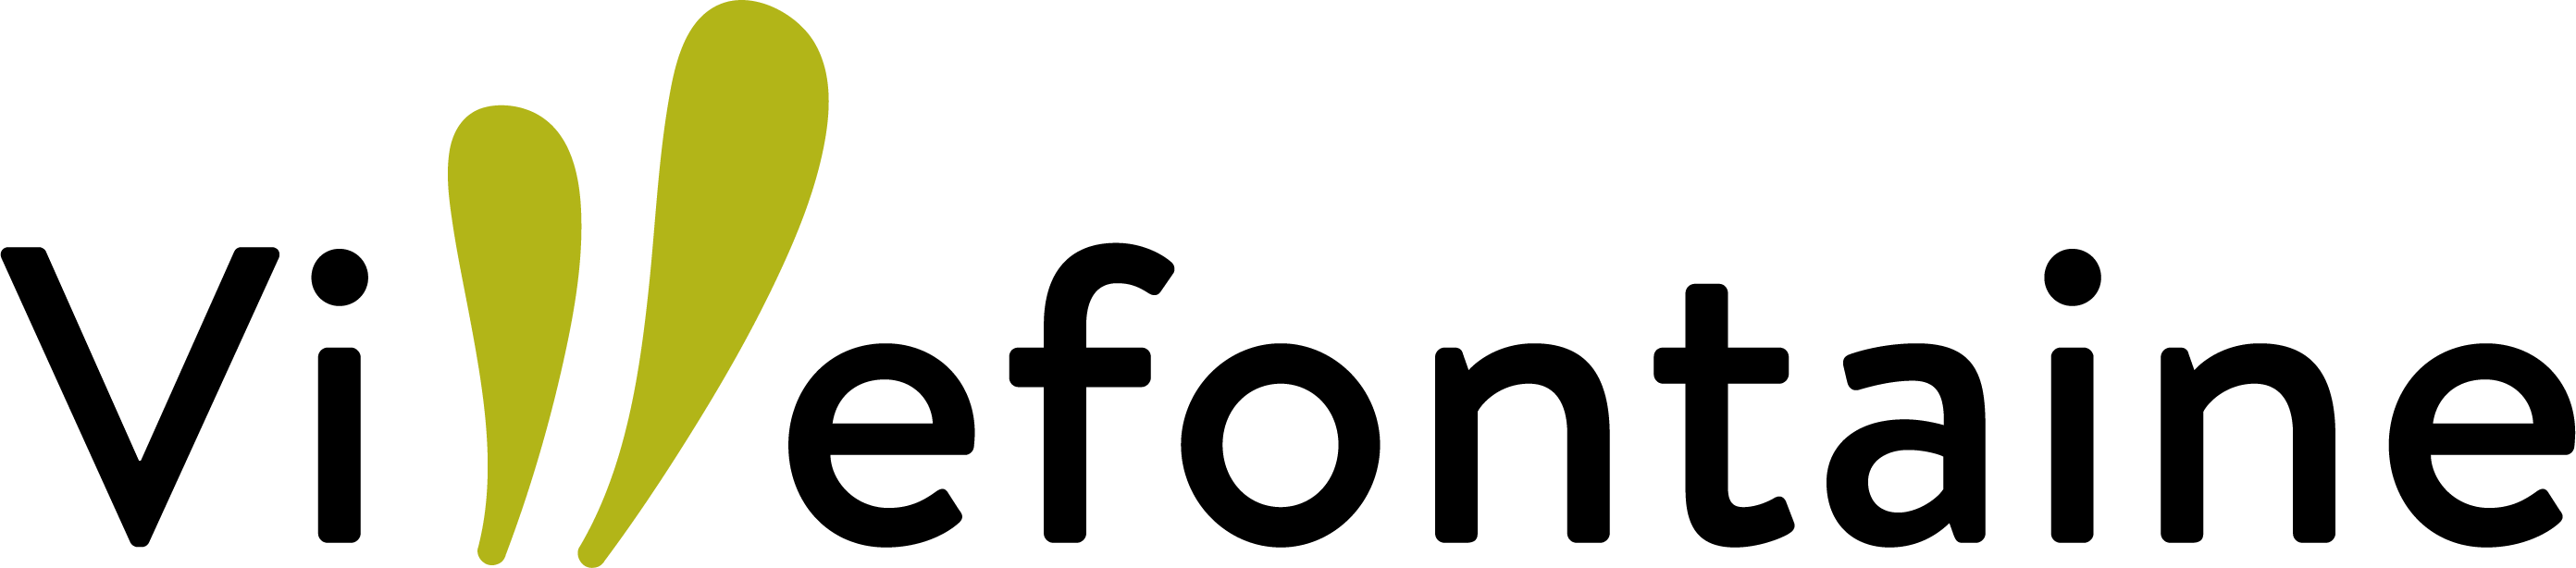 Villefontaine-logo- noir avec petales vertes.png